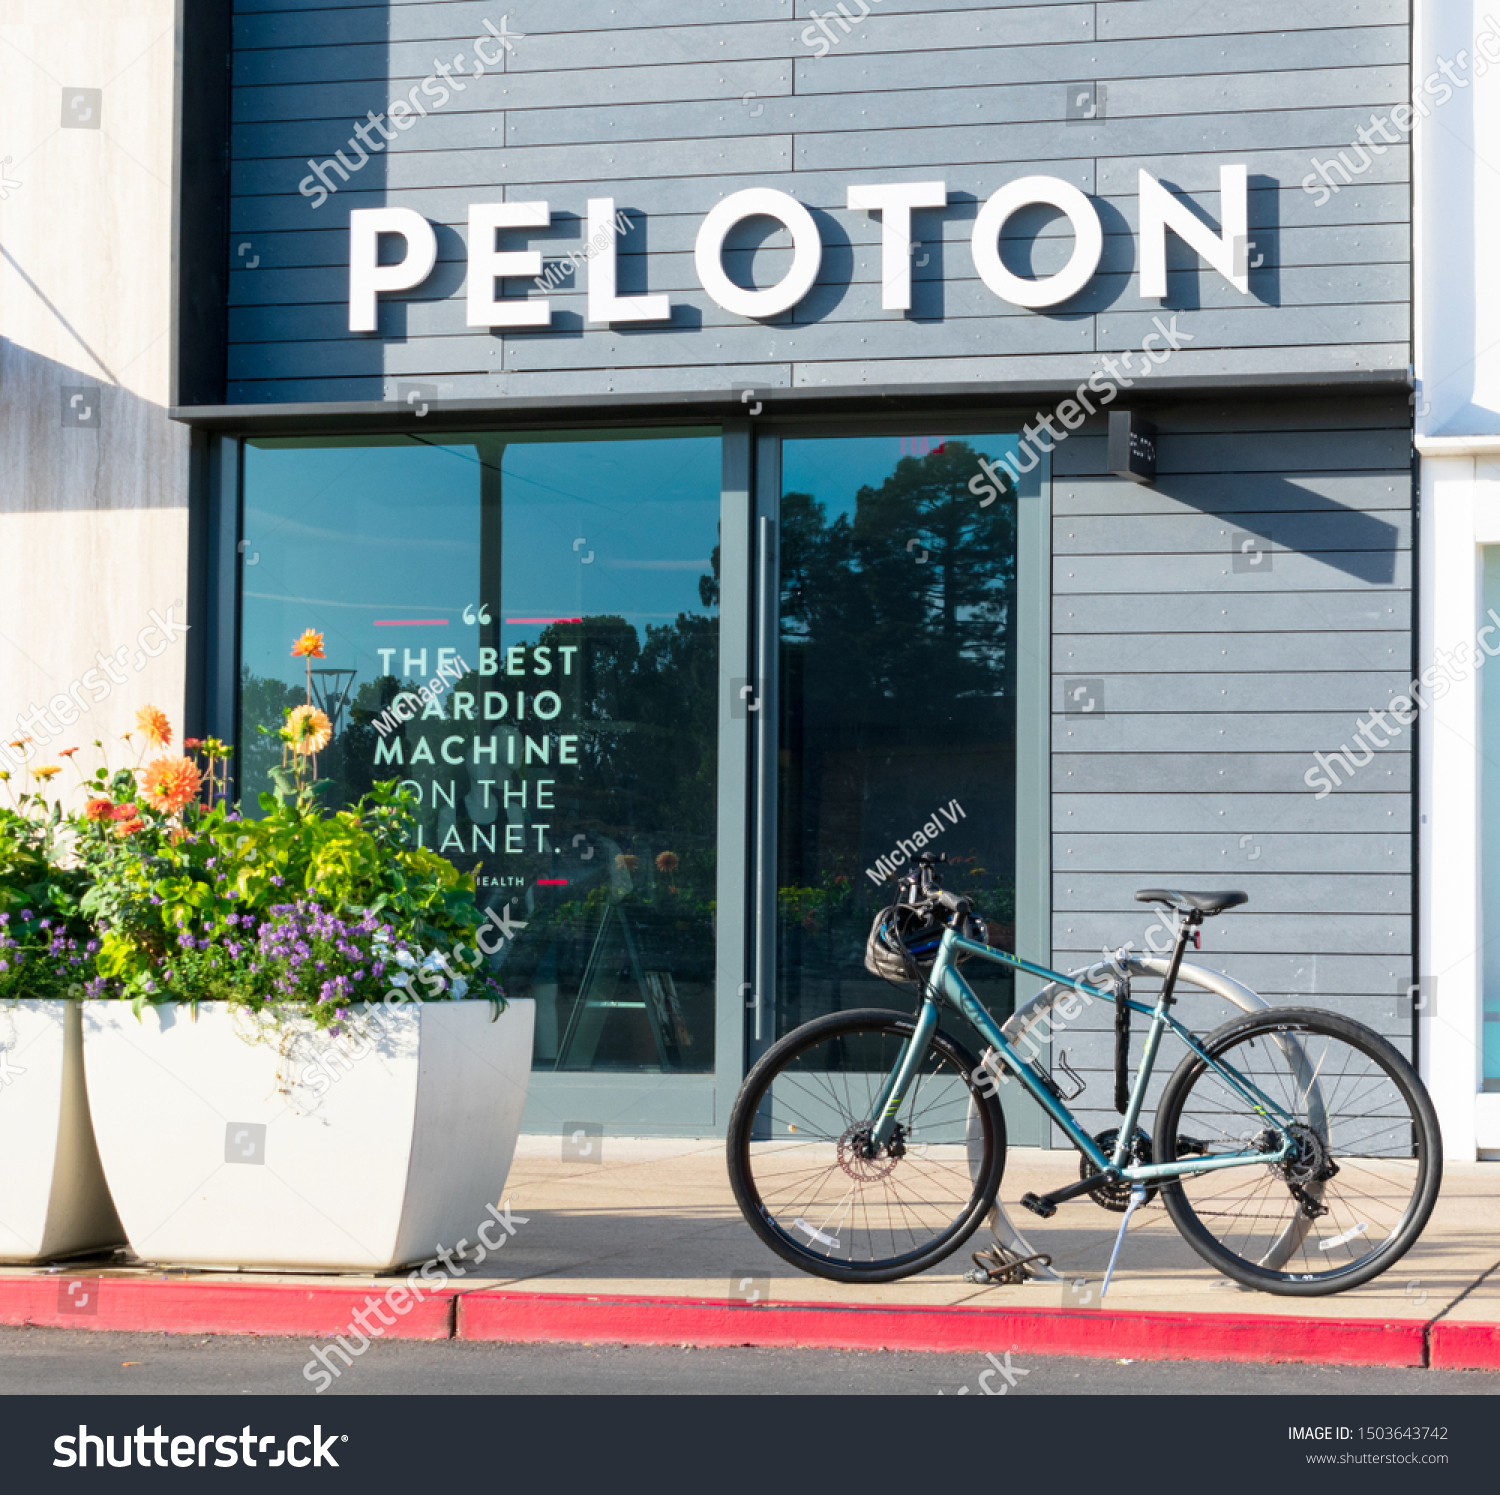 peloton outdoor bike